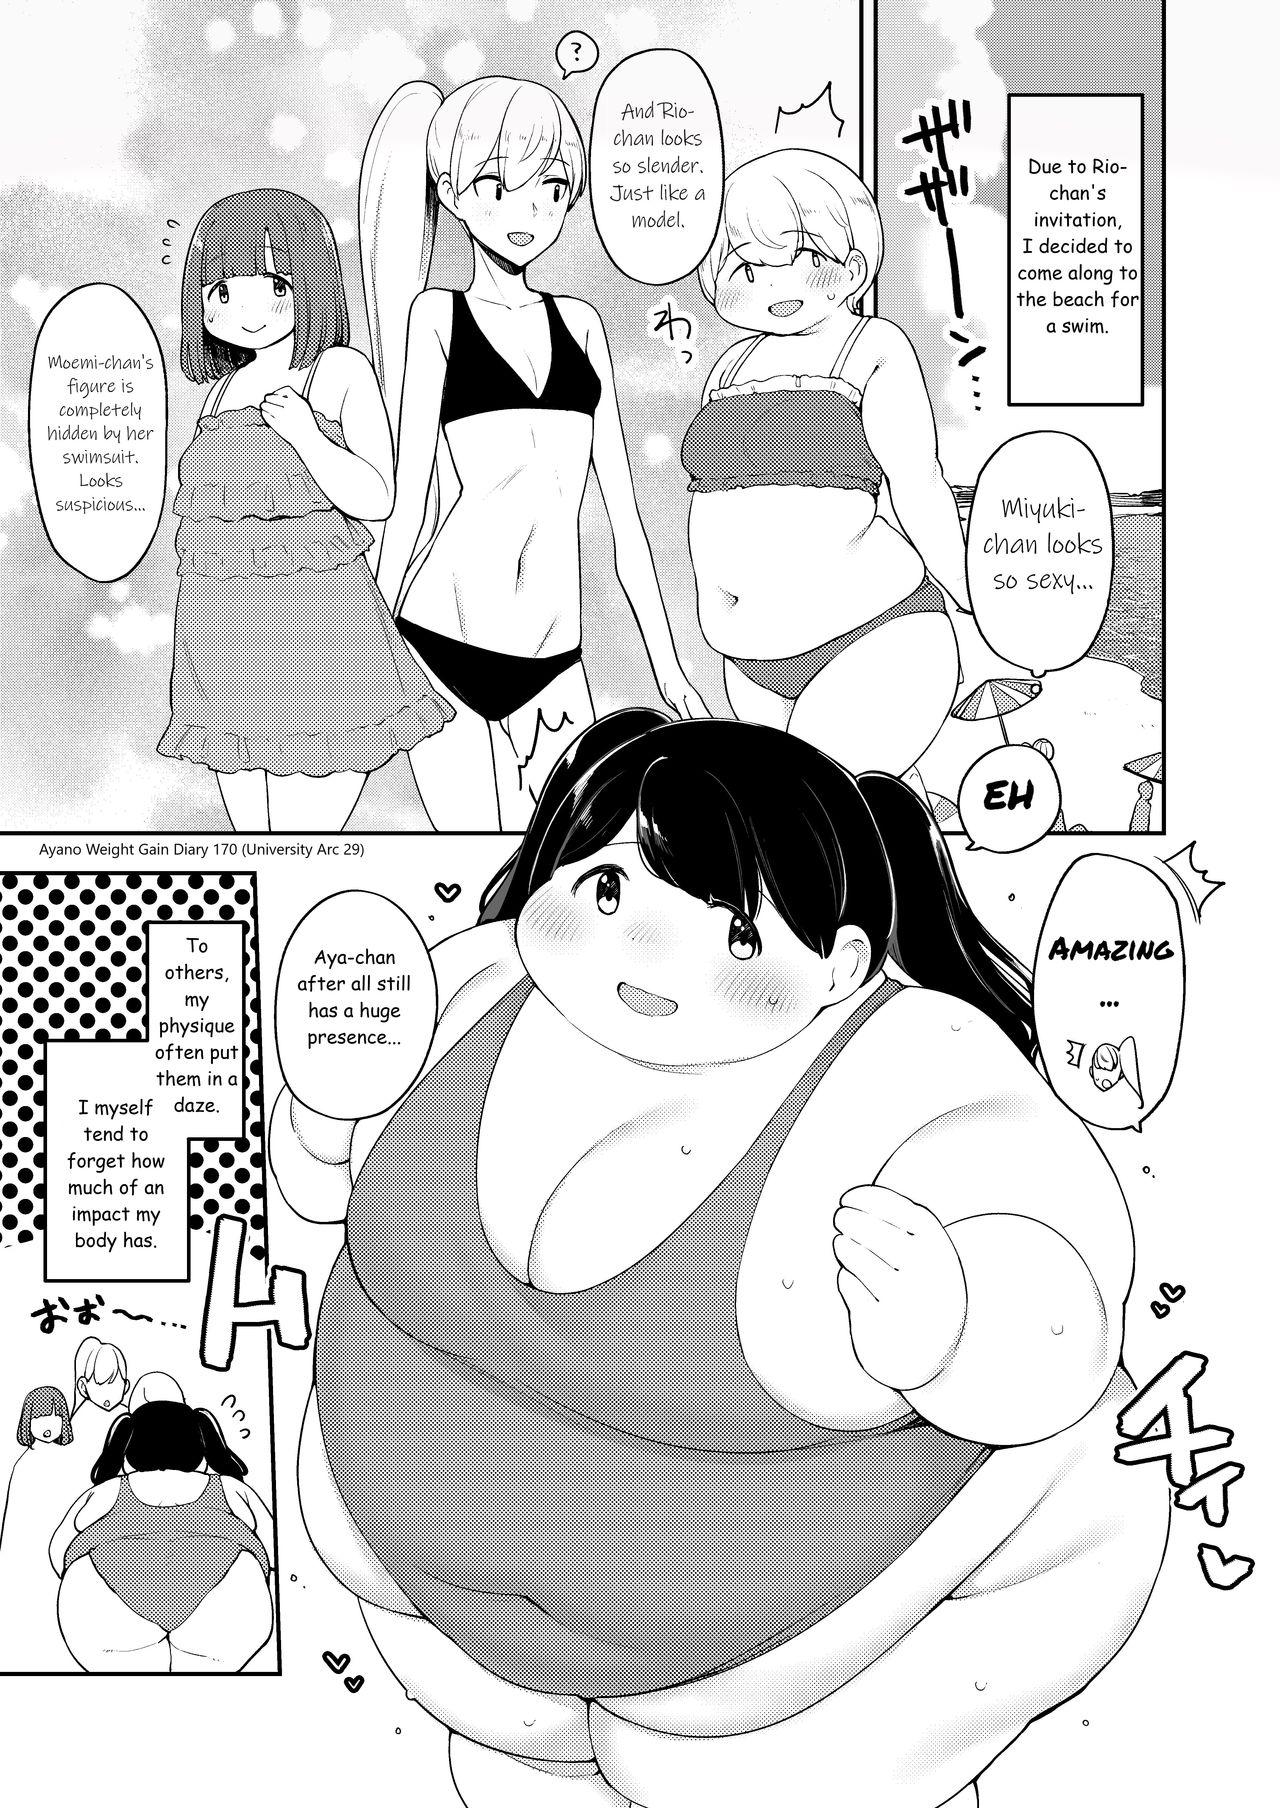 Ayano's Weight Gain Diary 171